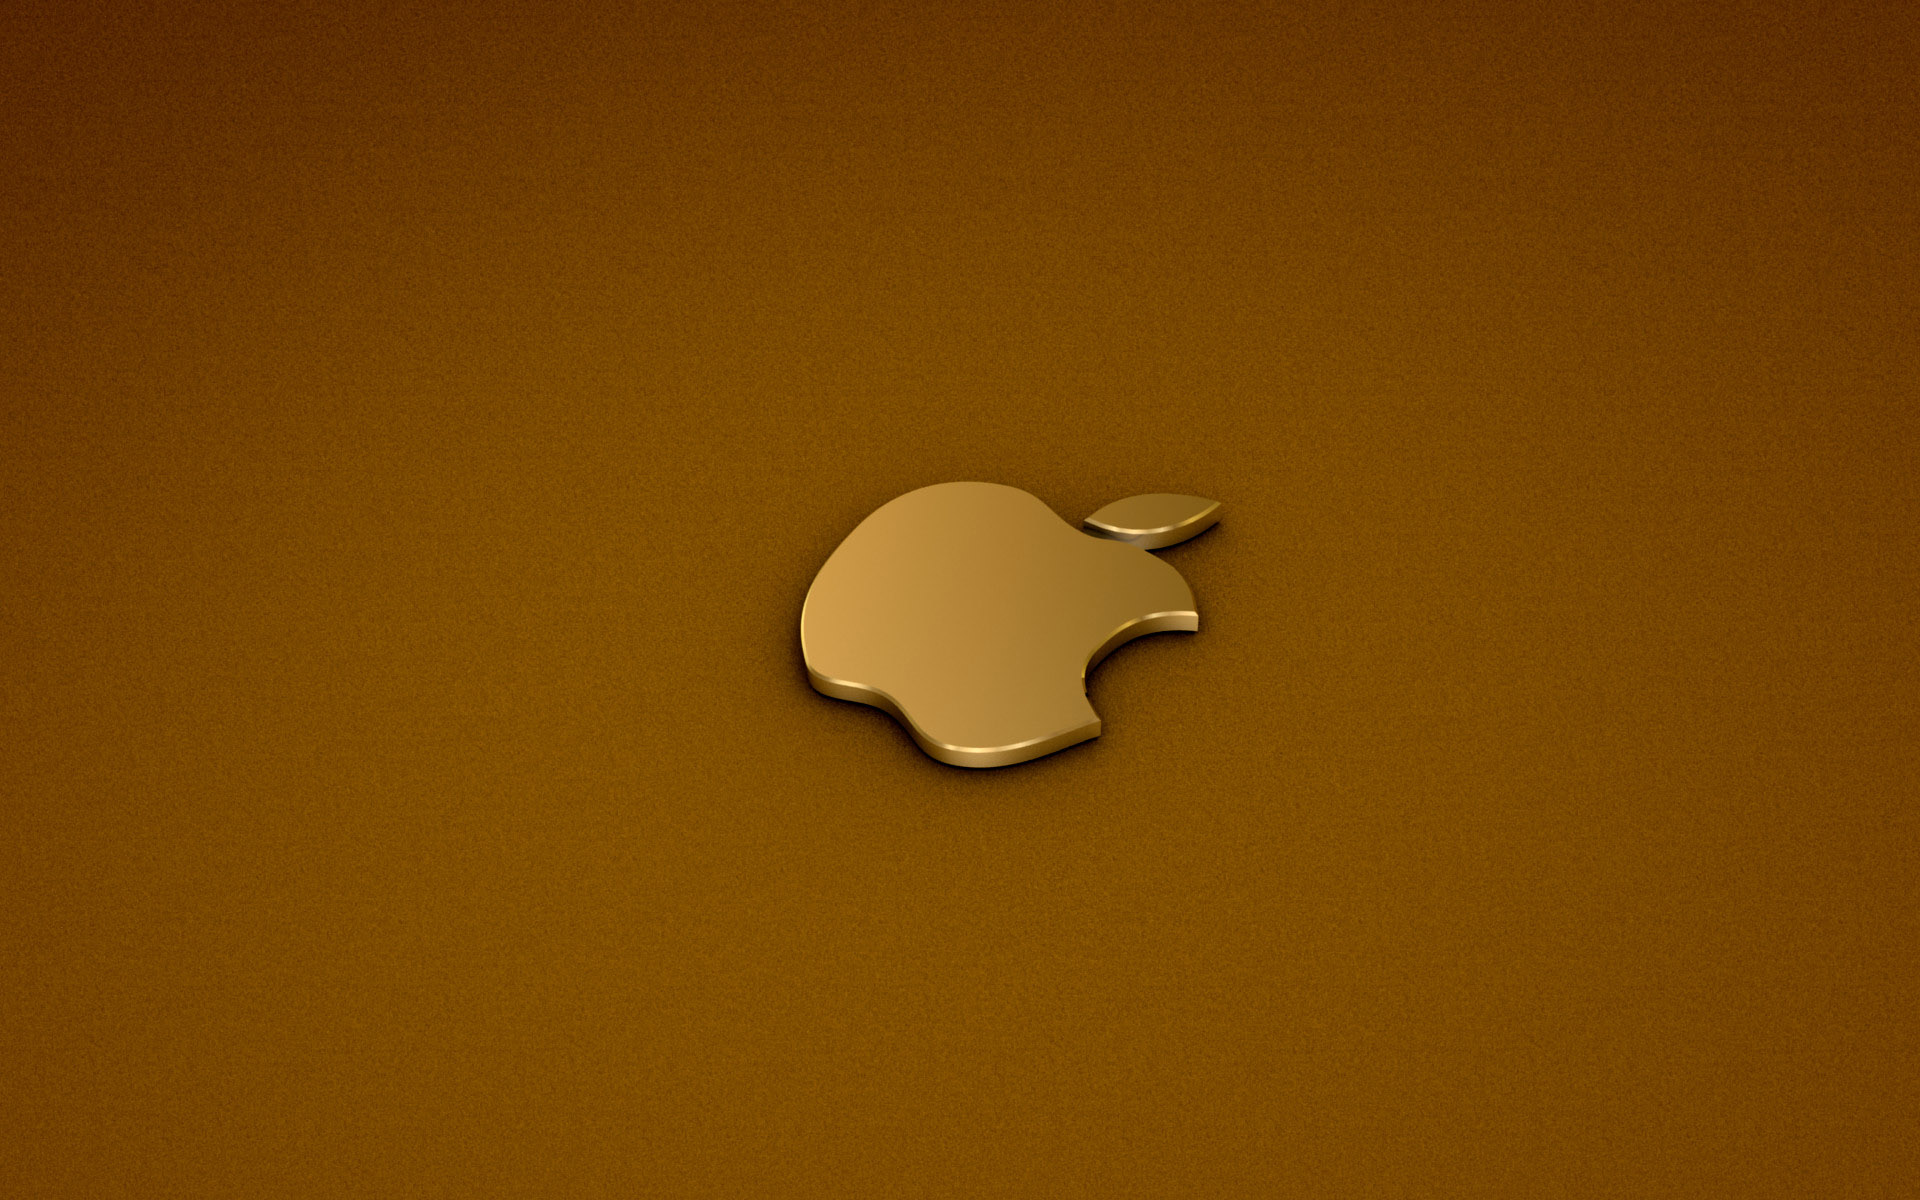 Wallpaper Apple Mac Animaatjes